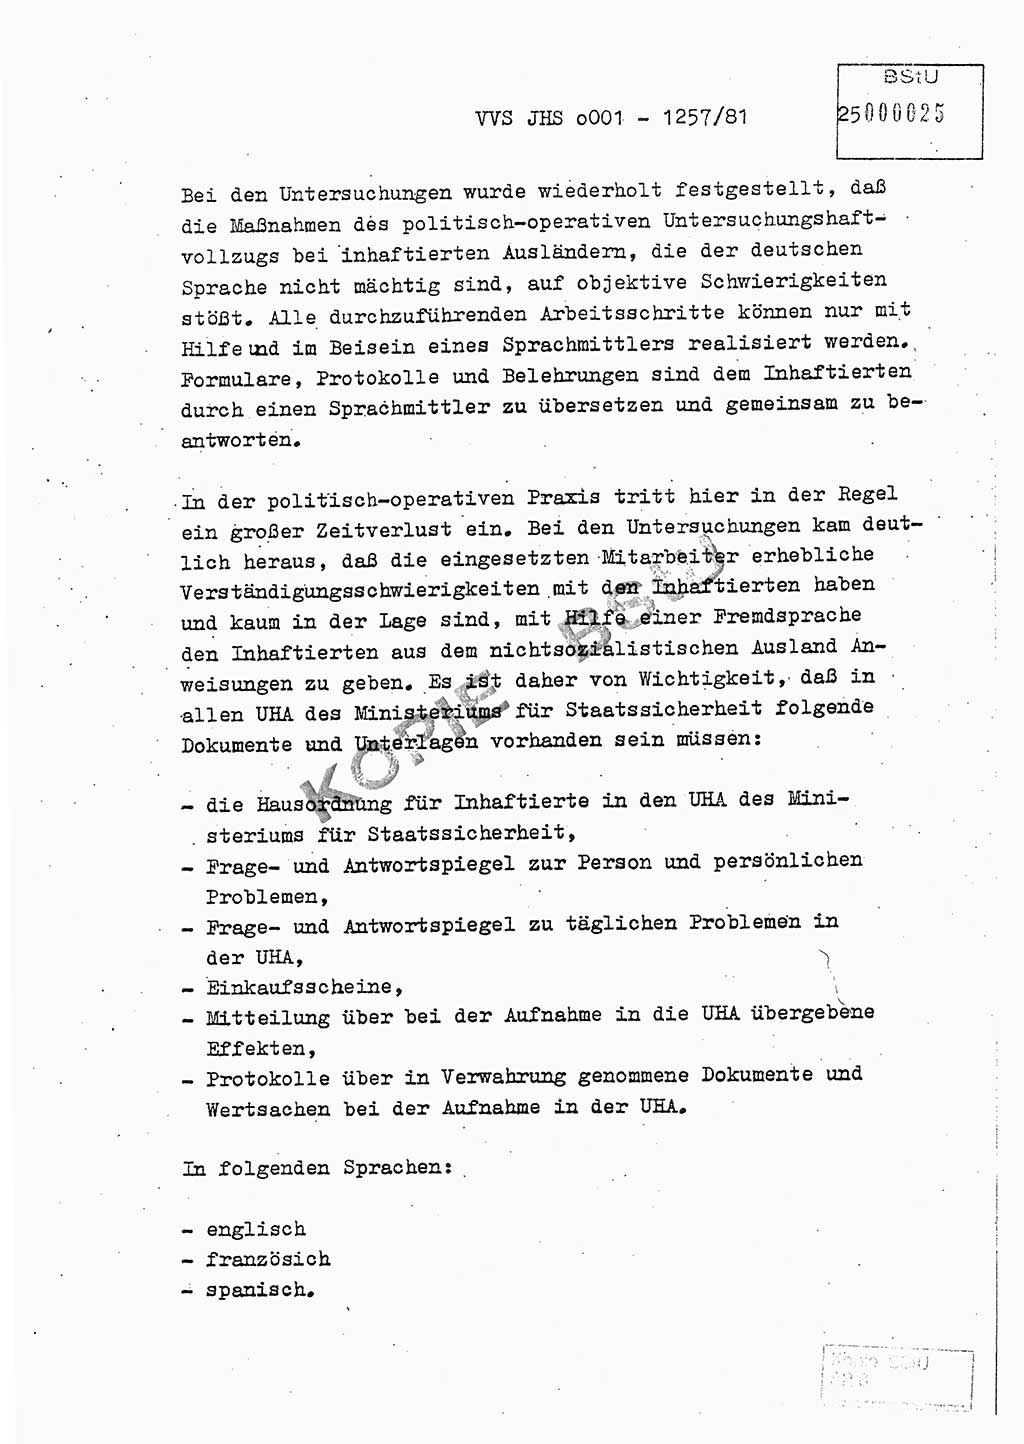 Fachschulabschlußarbeit Unterleutnant Dieter Möller (BV Rst. Abt. ⅩⅣ), Ministerium für Staatssicherheit (MfS) [Deutsche Demokratische Republik (DDR)], Juristische Hochschule (JHS), Vertrauliche Verschlußsache (VVS) o001-1257/81, Potsdam 1982, Seite 25 (FS-Abschl.-Arb. MfS DDR JHS VVS o001-1257/81 1982, S. 25)